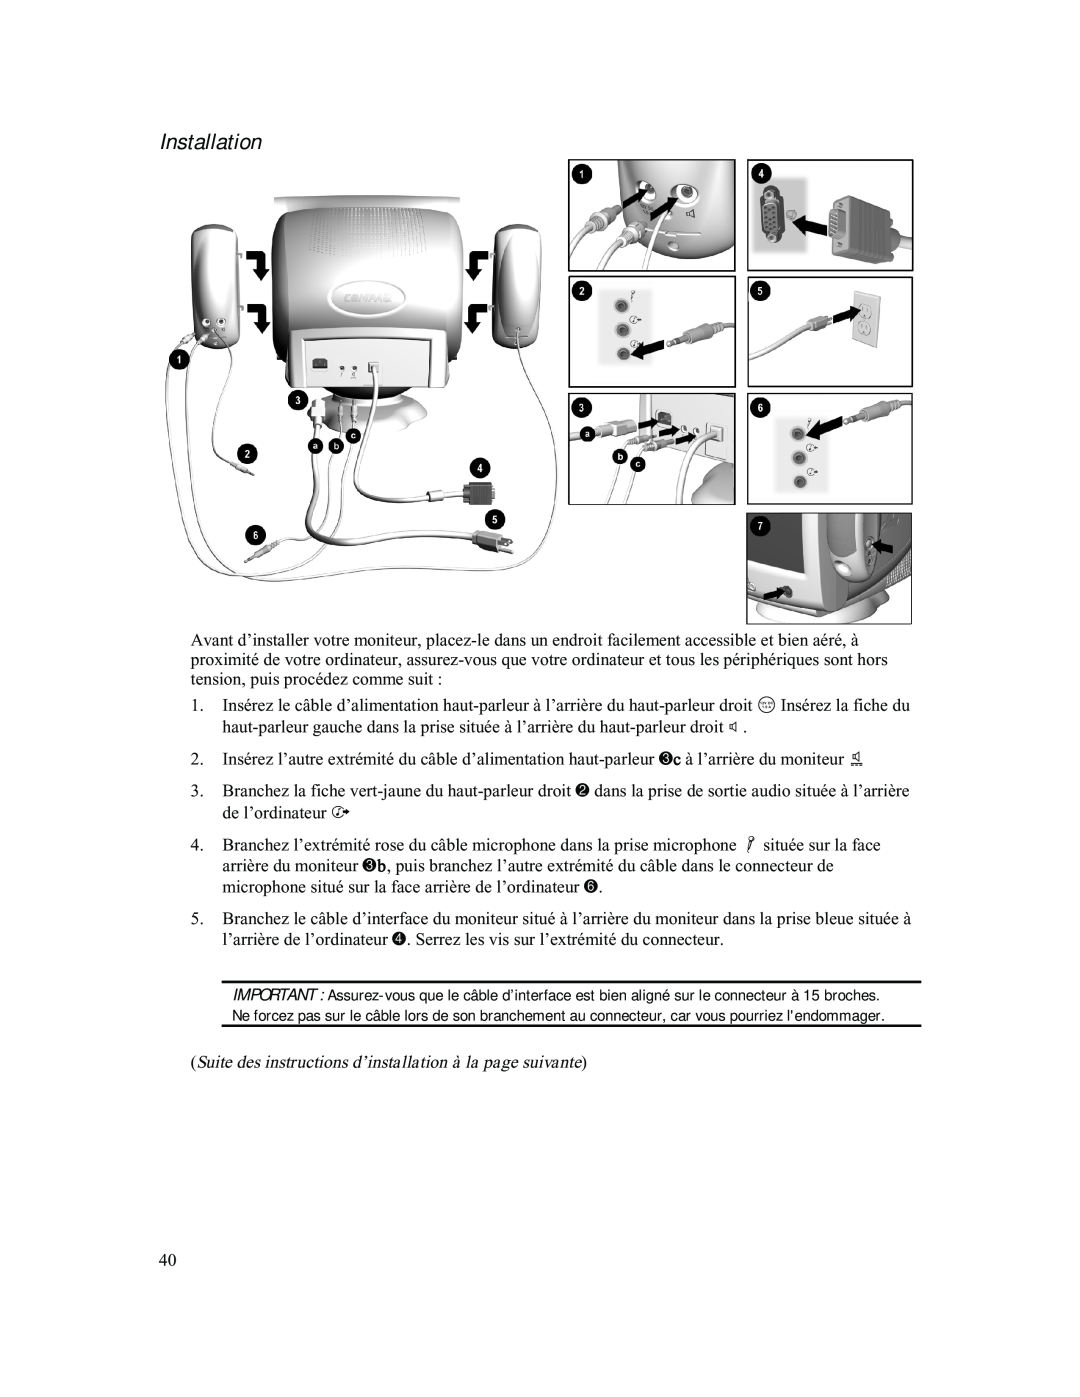 Compaq 740 manual Suite des instructions d’installation à la page suivante, Installation 